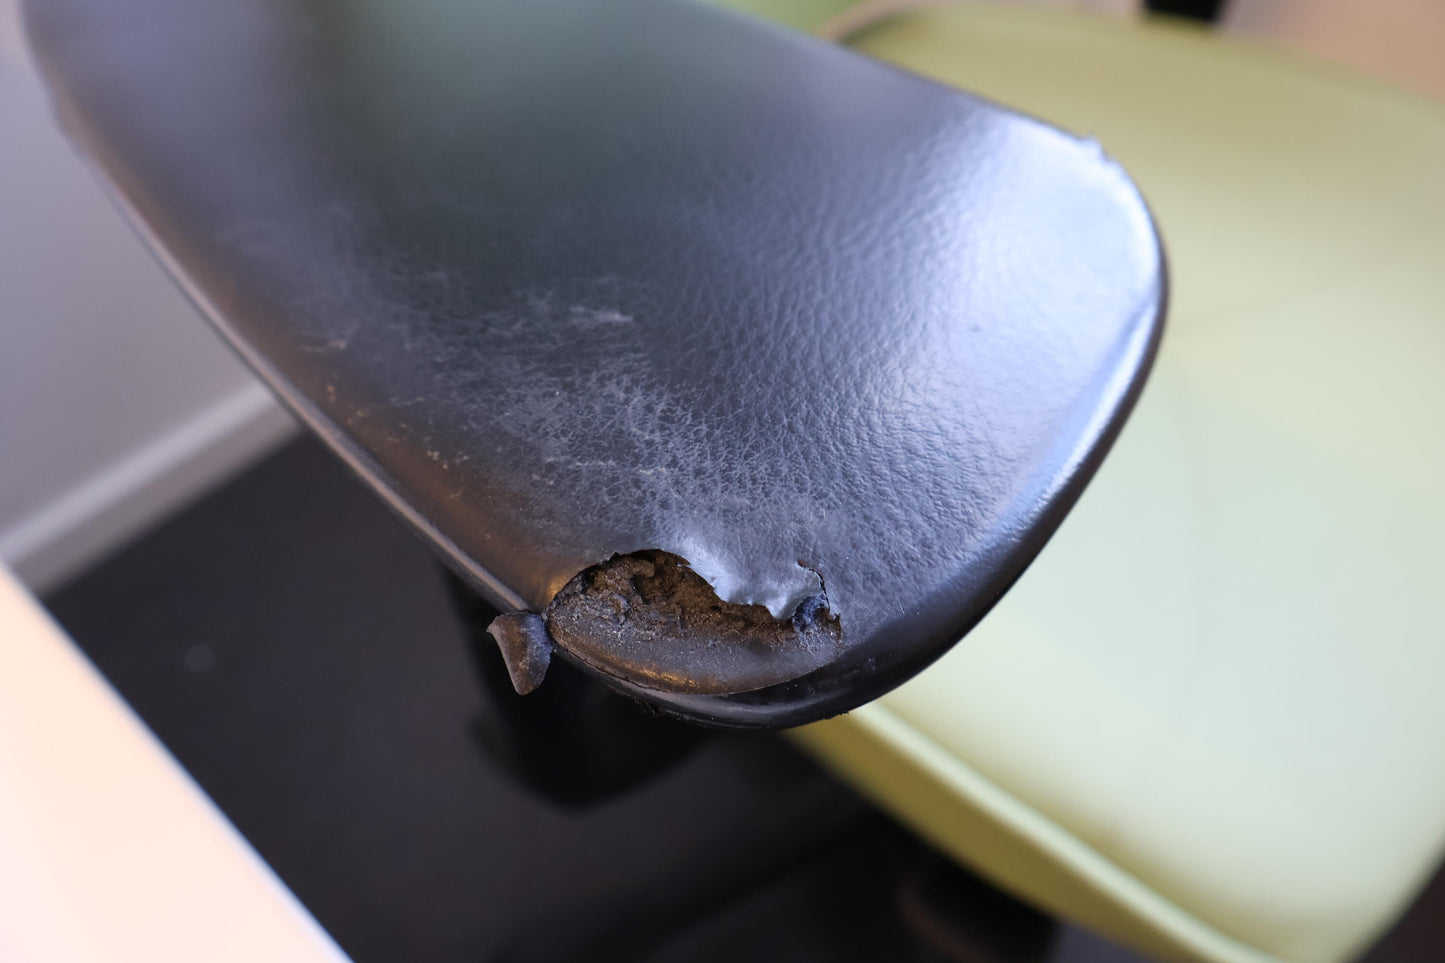 Nyrenset | Kinnarps Freefloat kontorstol i lys grønn/sort